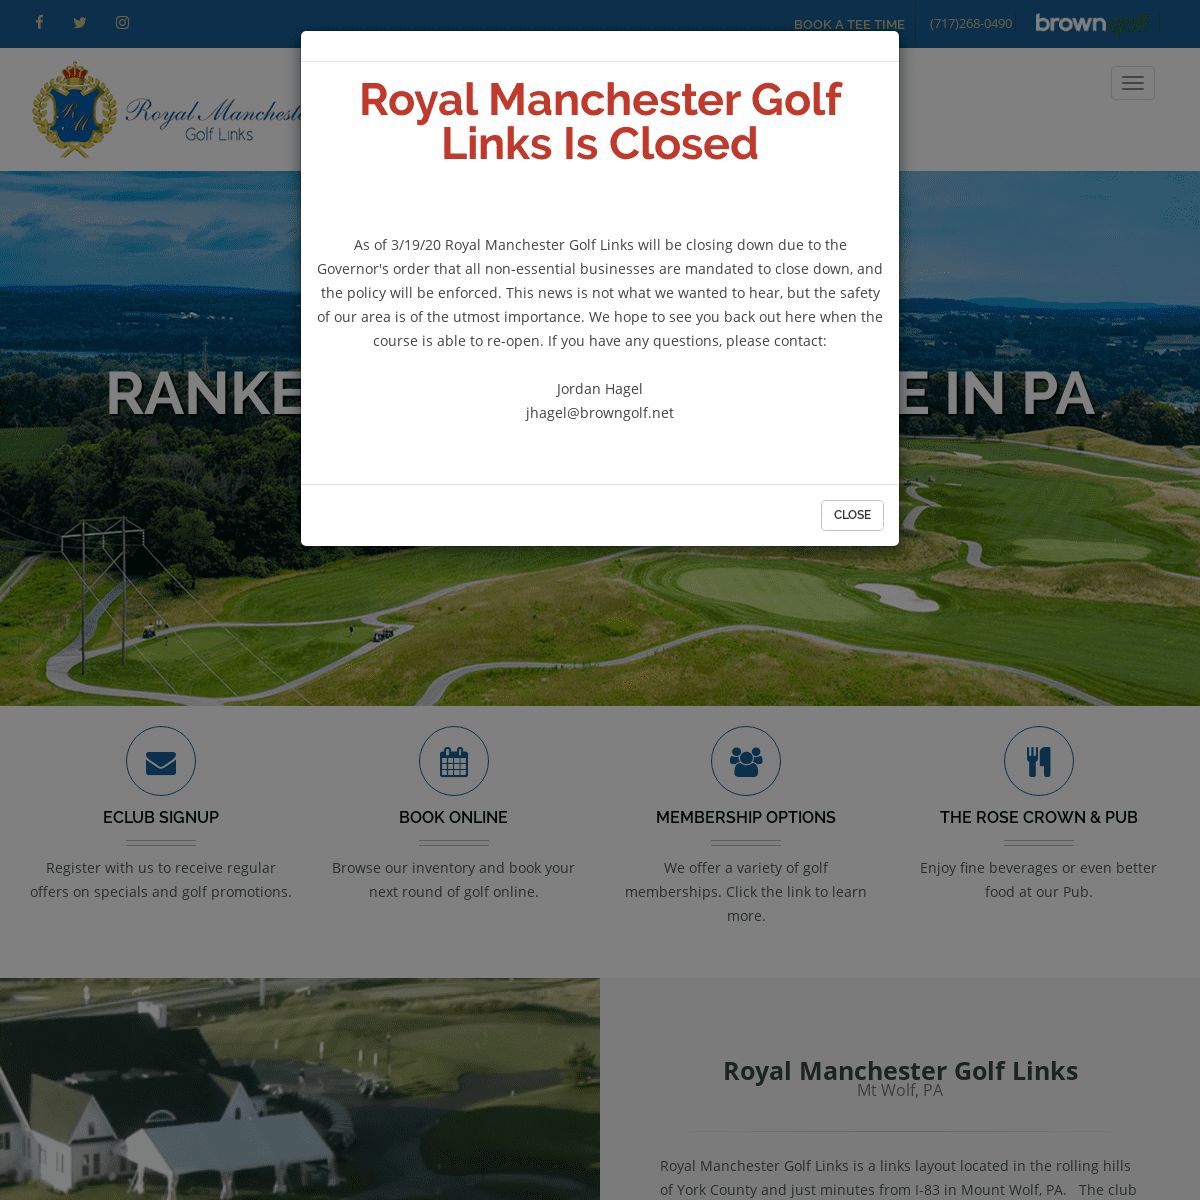 A complete backup of royalmanchestergolflinks.com